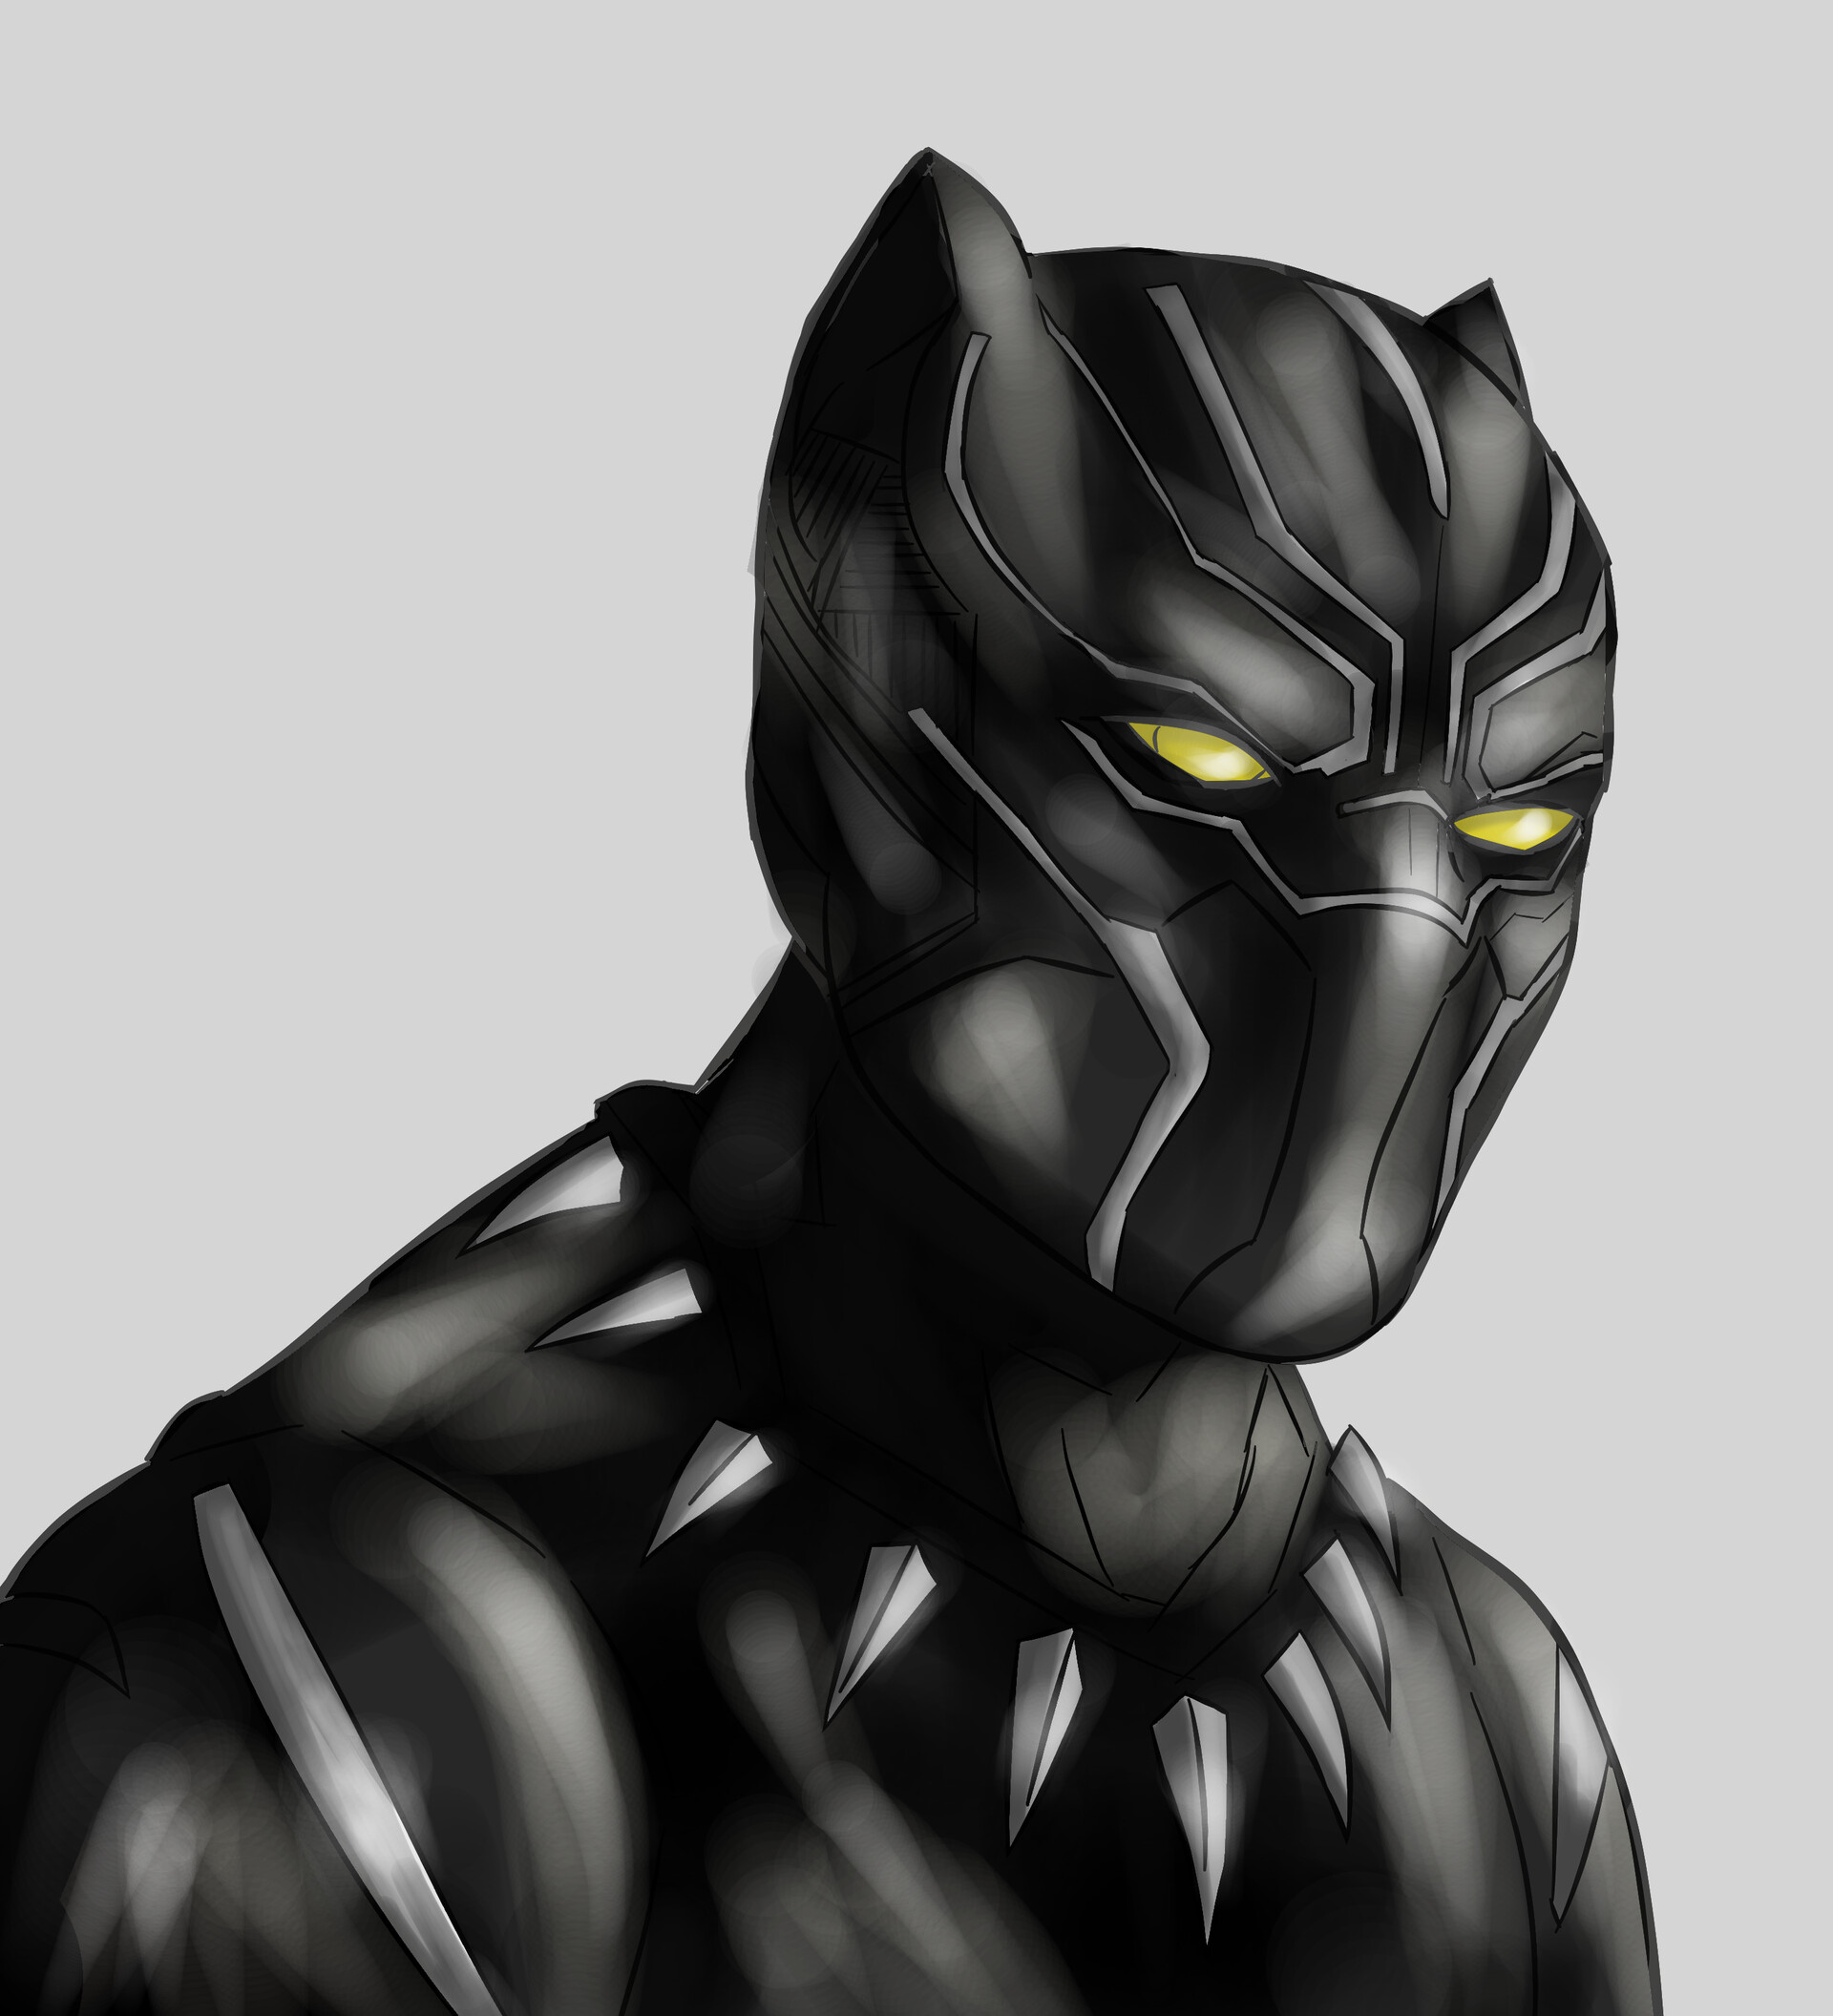 ArtStation - illustration Black panther